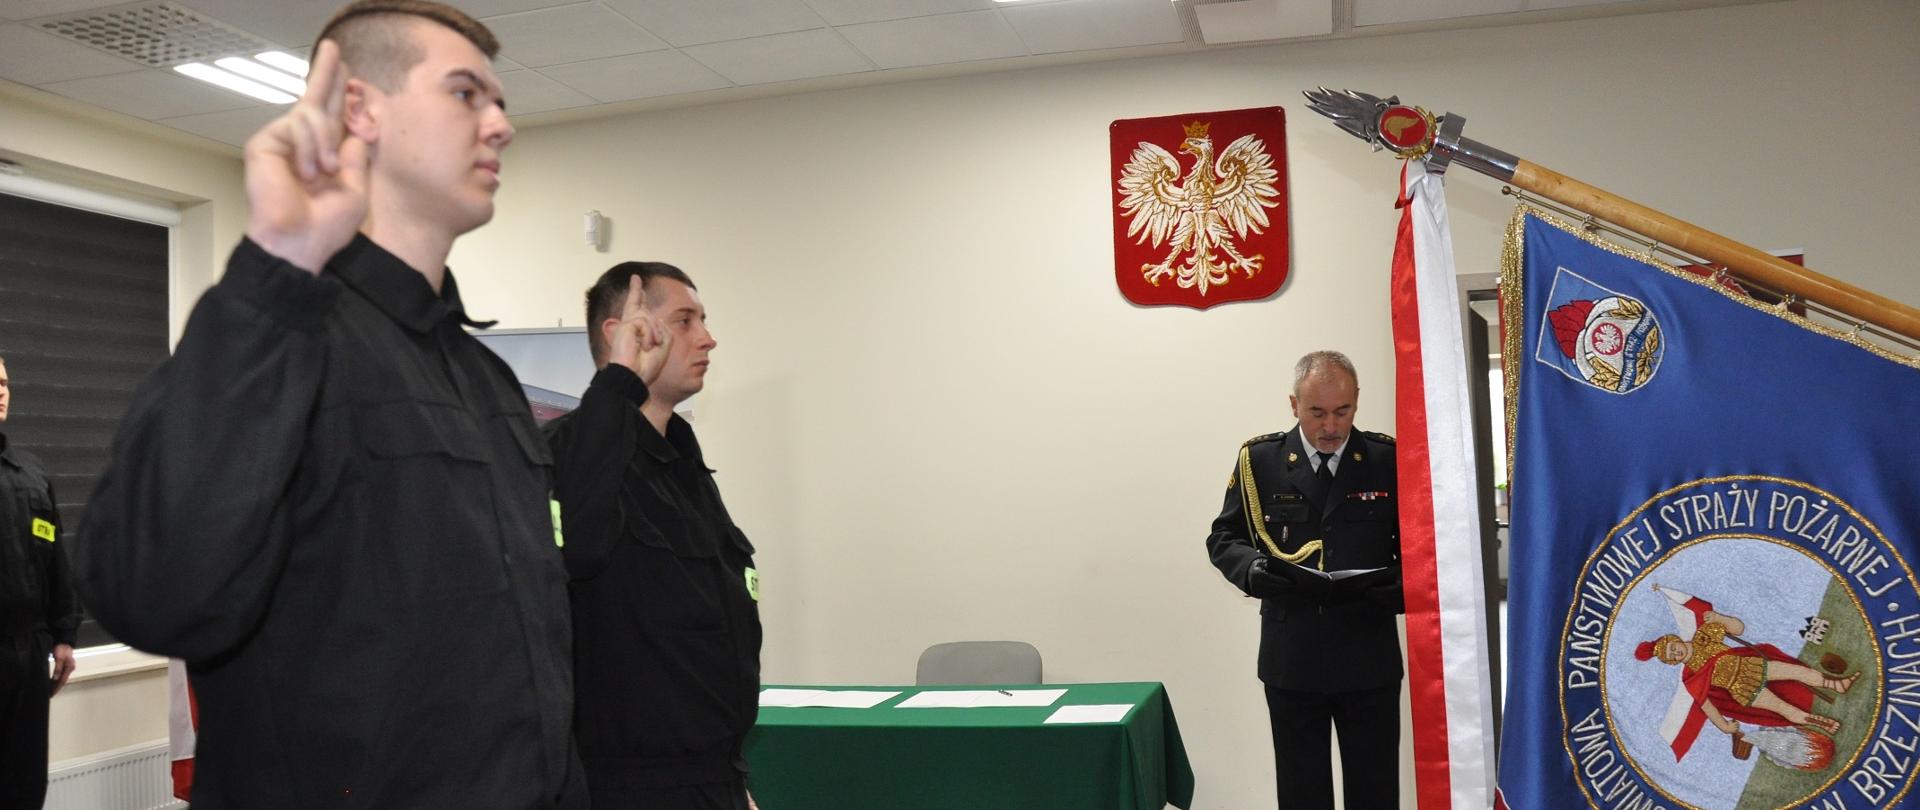 Dwóch nowo przyjętych strażaków składa ślubowanie strażaka PSP w obecności Komendanta Powiatowego PSP w Brzezinach st. bryg. Dariusza Guzka w pomieszczeniach komendy powiatowej.